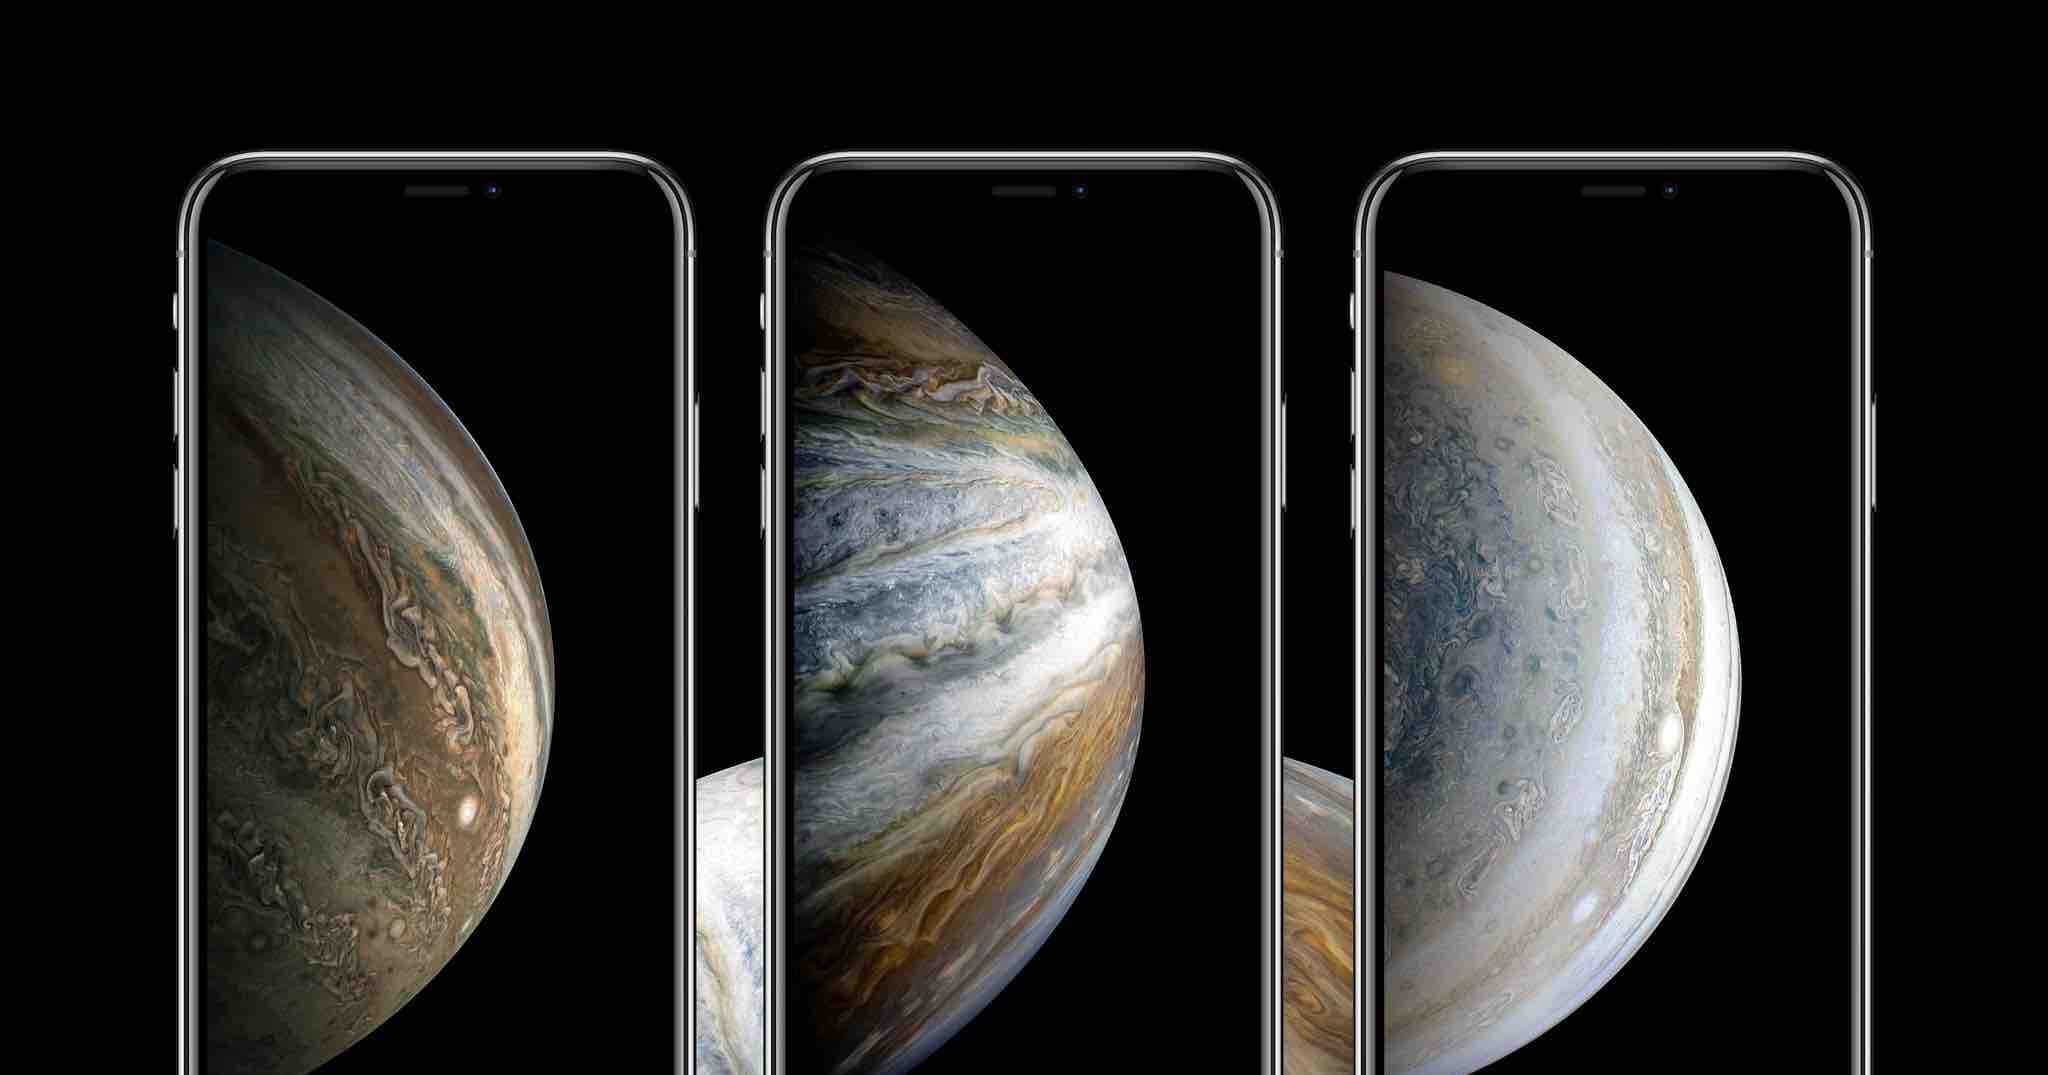 Với chất lượng màn hình tuyệt vời của iPhone XS, bạn nên lựa chọn những hình nền thật đẹp mắt để tôn lên vẻ đẹp của điện thoại. Hãy tham khảo ngay những mẫu hình nền iPhone XS đáng yêu và lãng mạn để tăng thêm tính thẩm mỹ cho thiết bị.